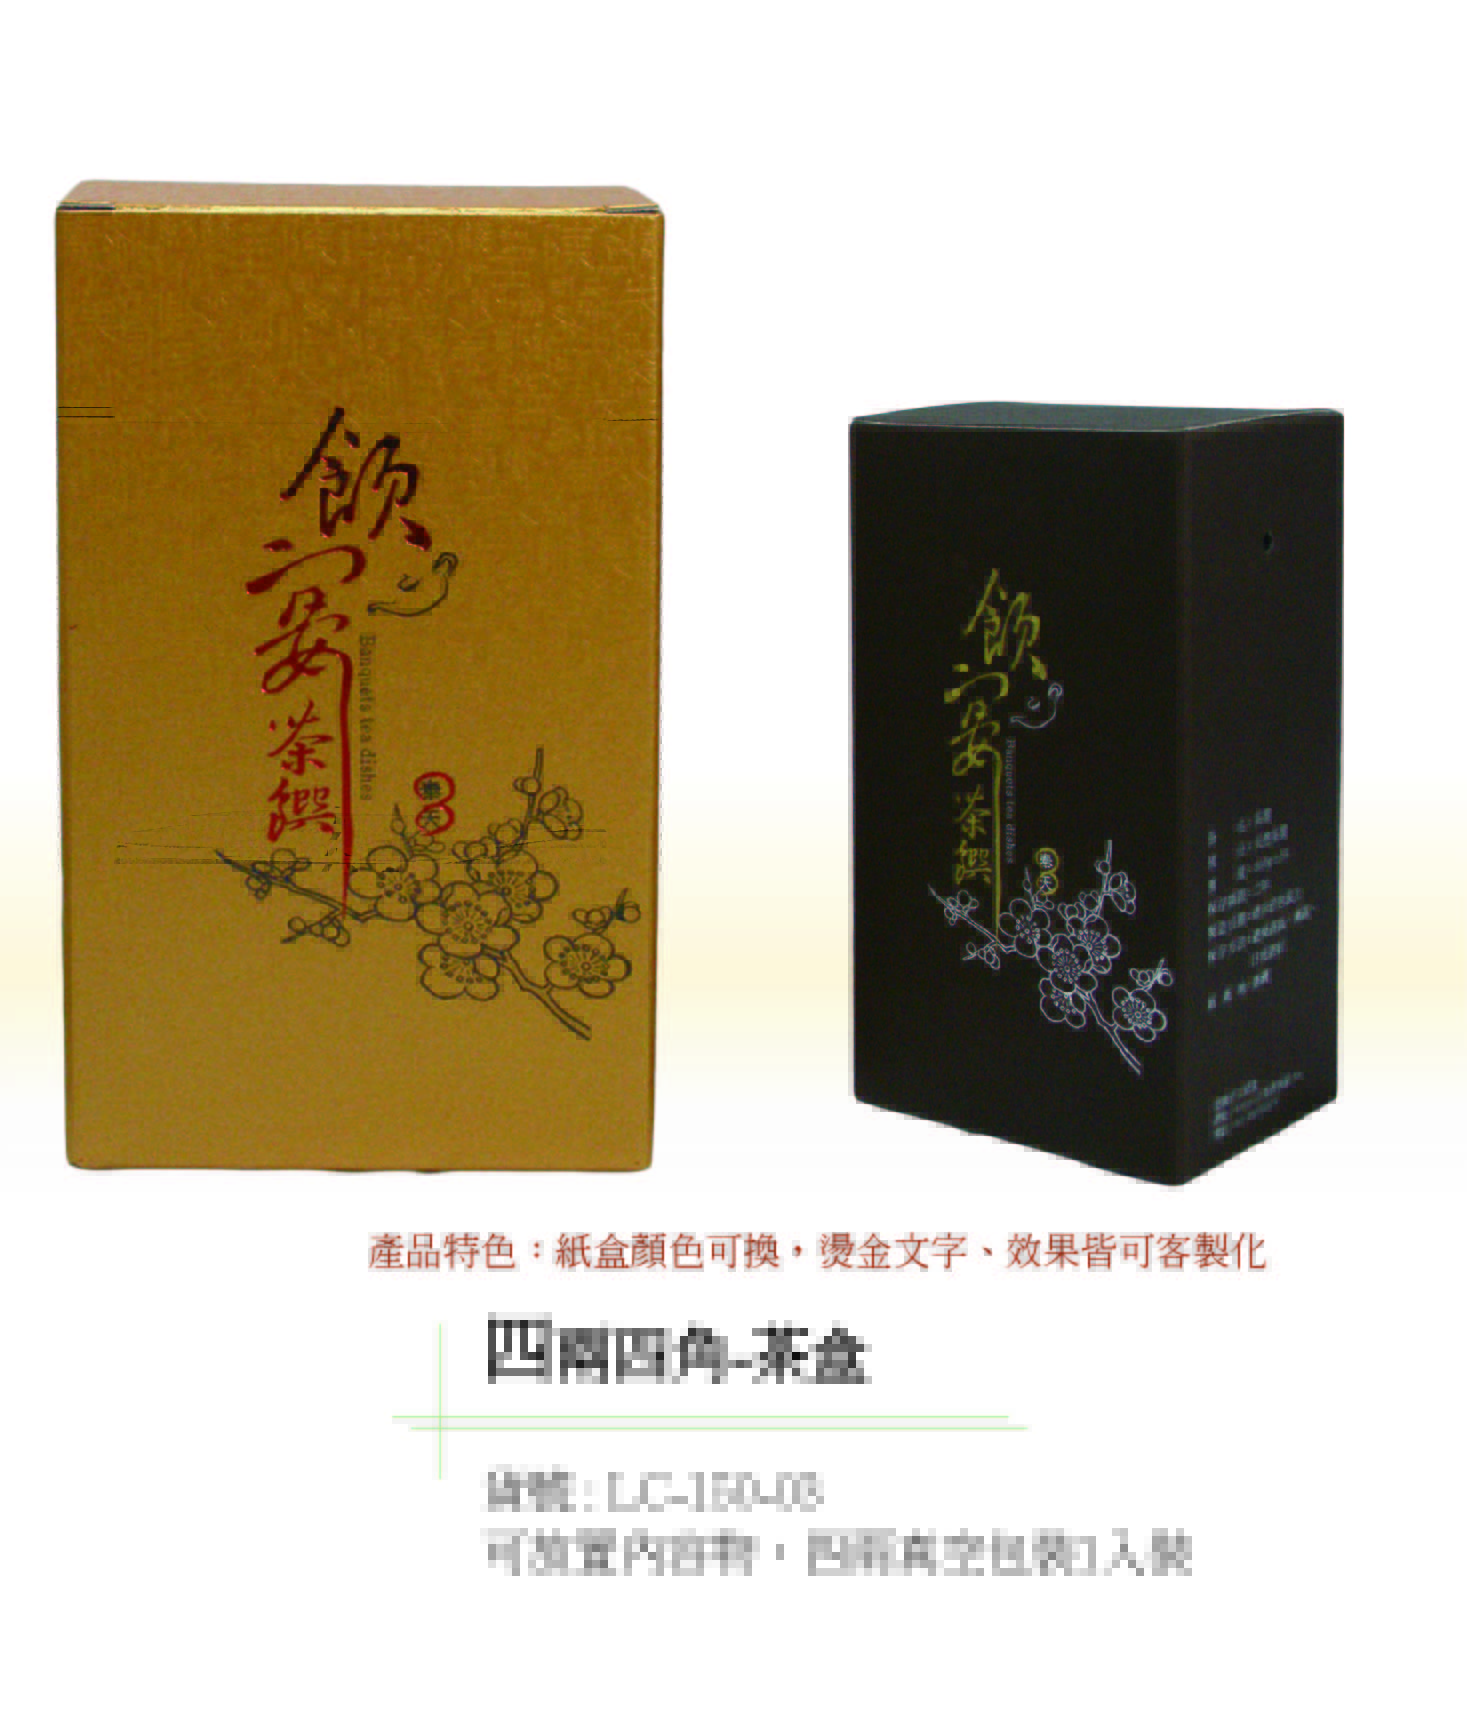 閎康彩色印刷有限公司-四兩茶葉盒